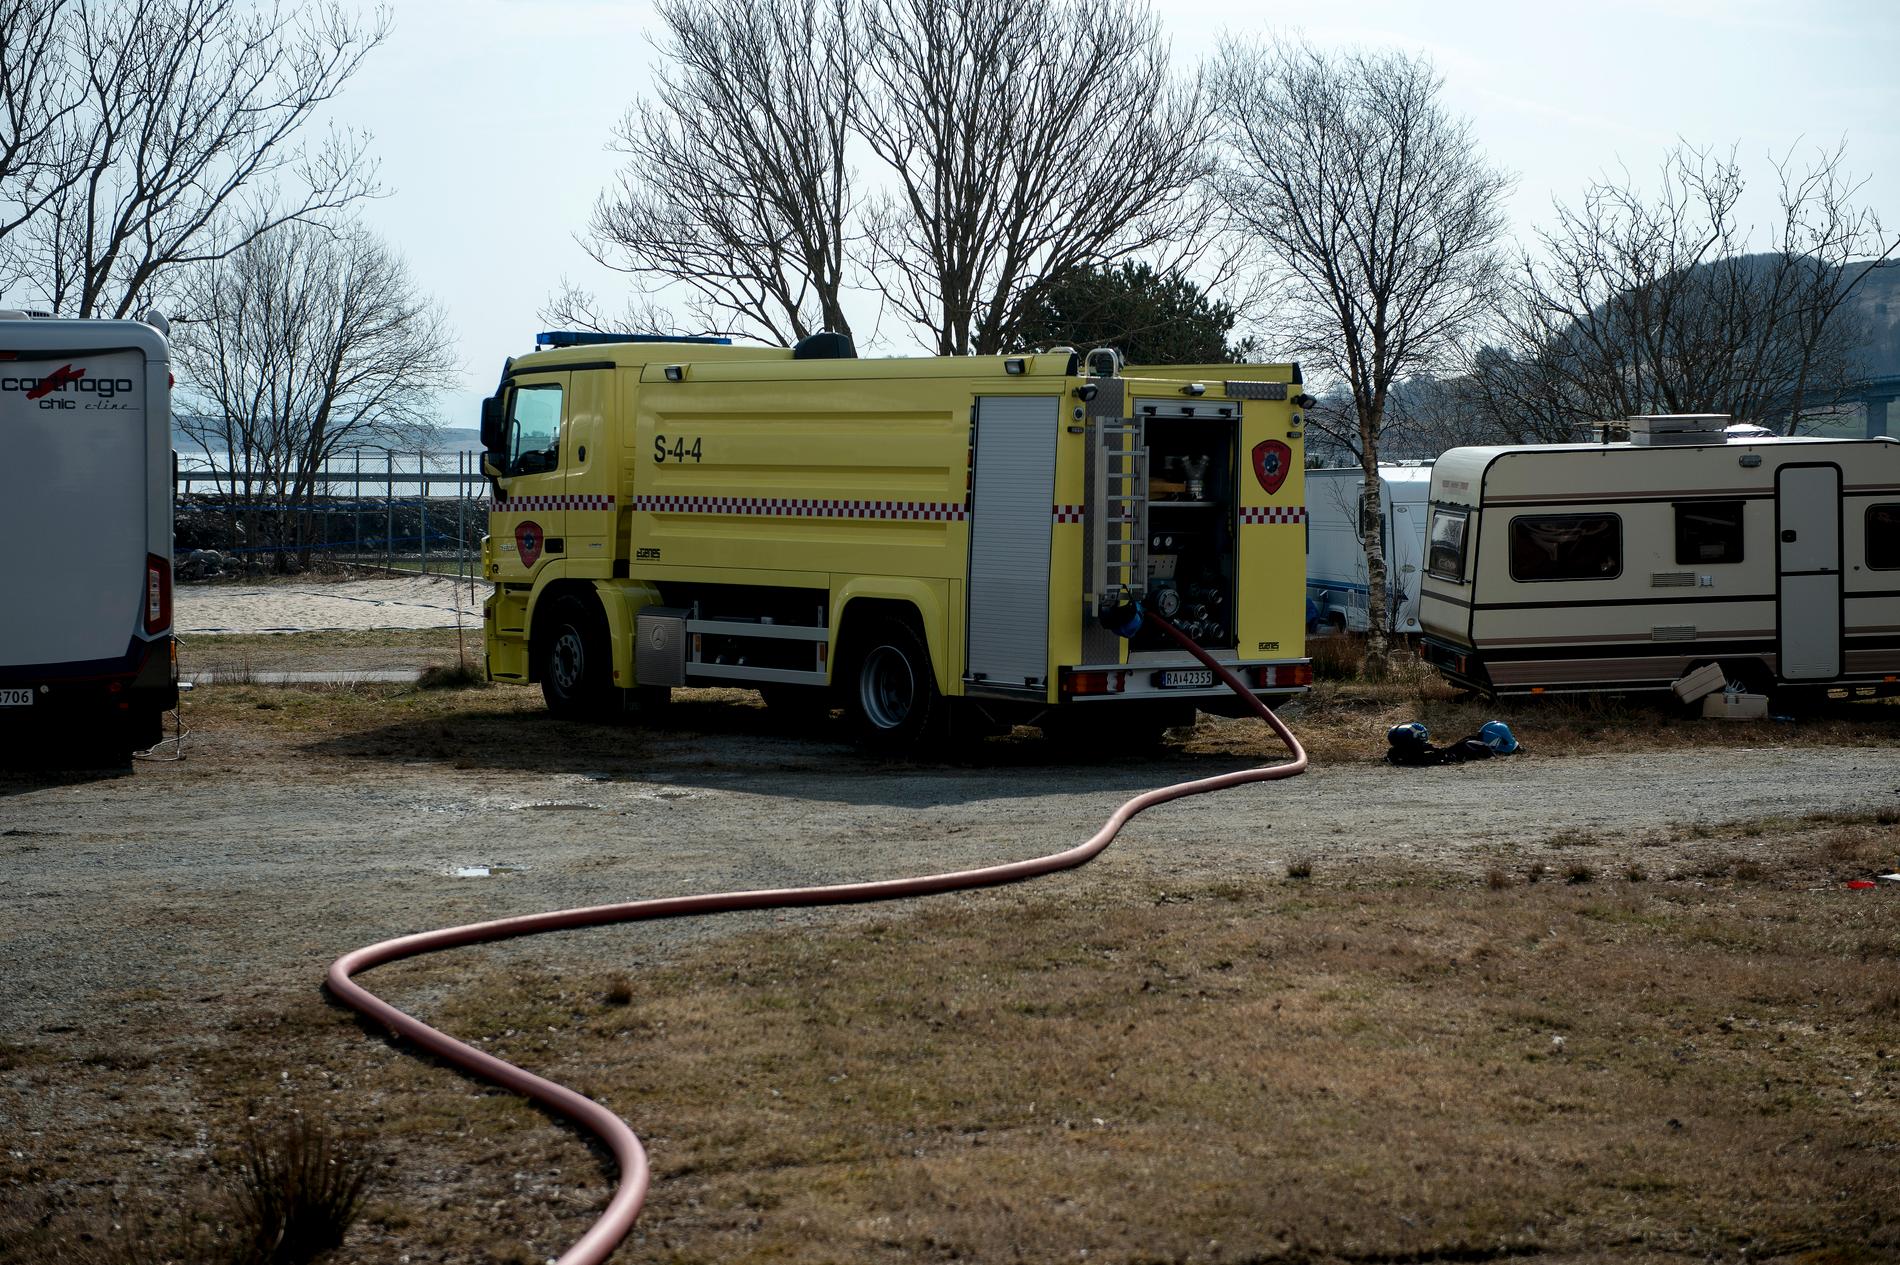 Tre personer mistet livet i en brann i en campingvogn i Rennesøy kommune i Rogaland tidlig lørdag morgen. Vogna var overtent da brannvesenet kom fram til campingplassen.